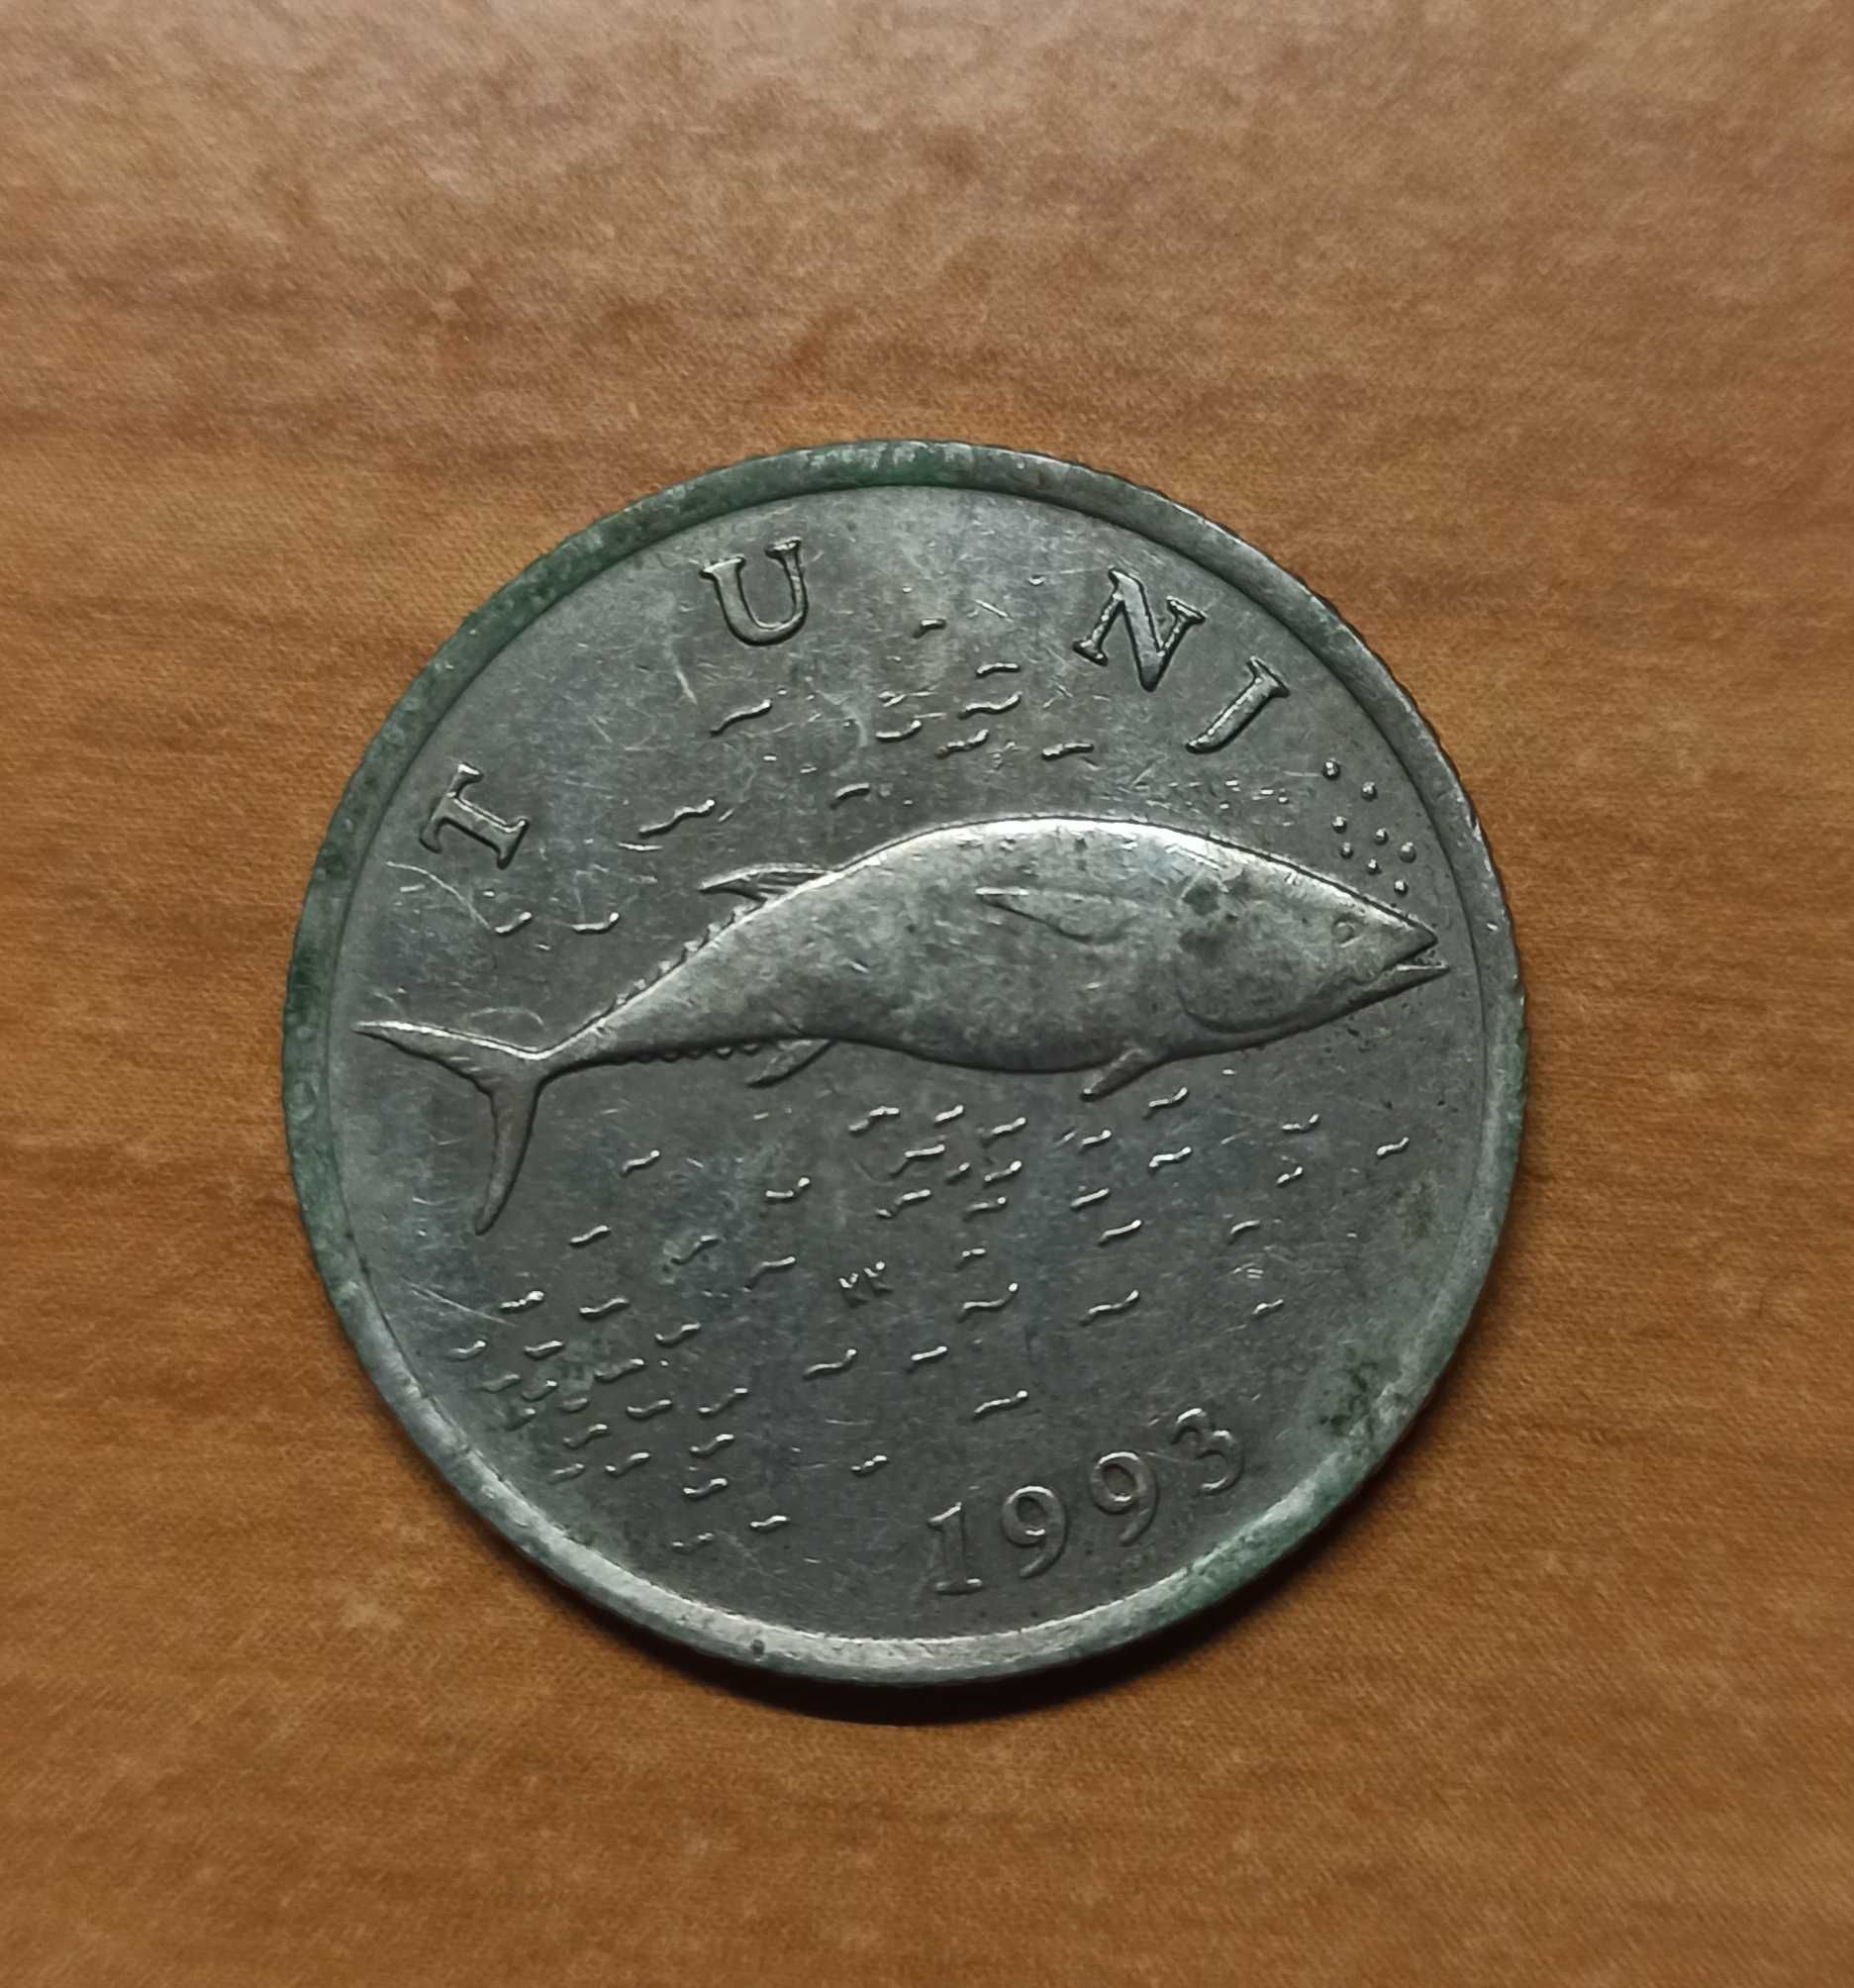 Moneta chorwacka - 2 kune 1993r.